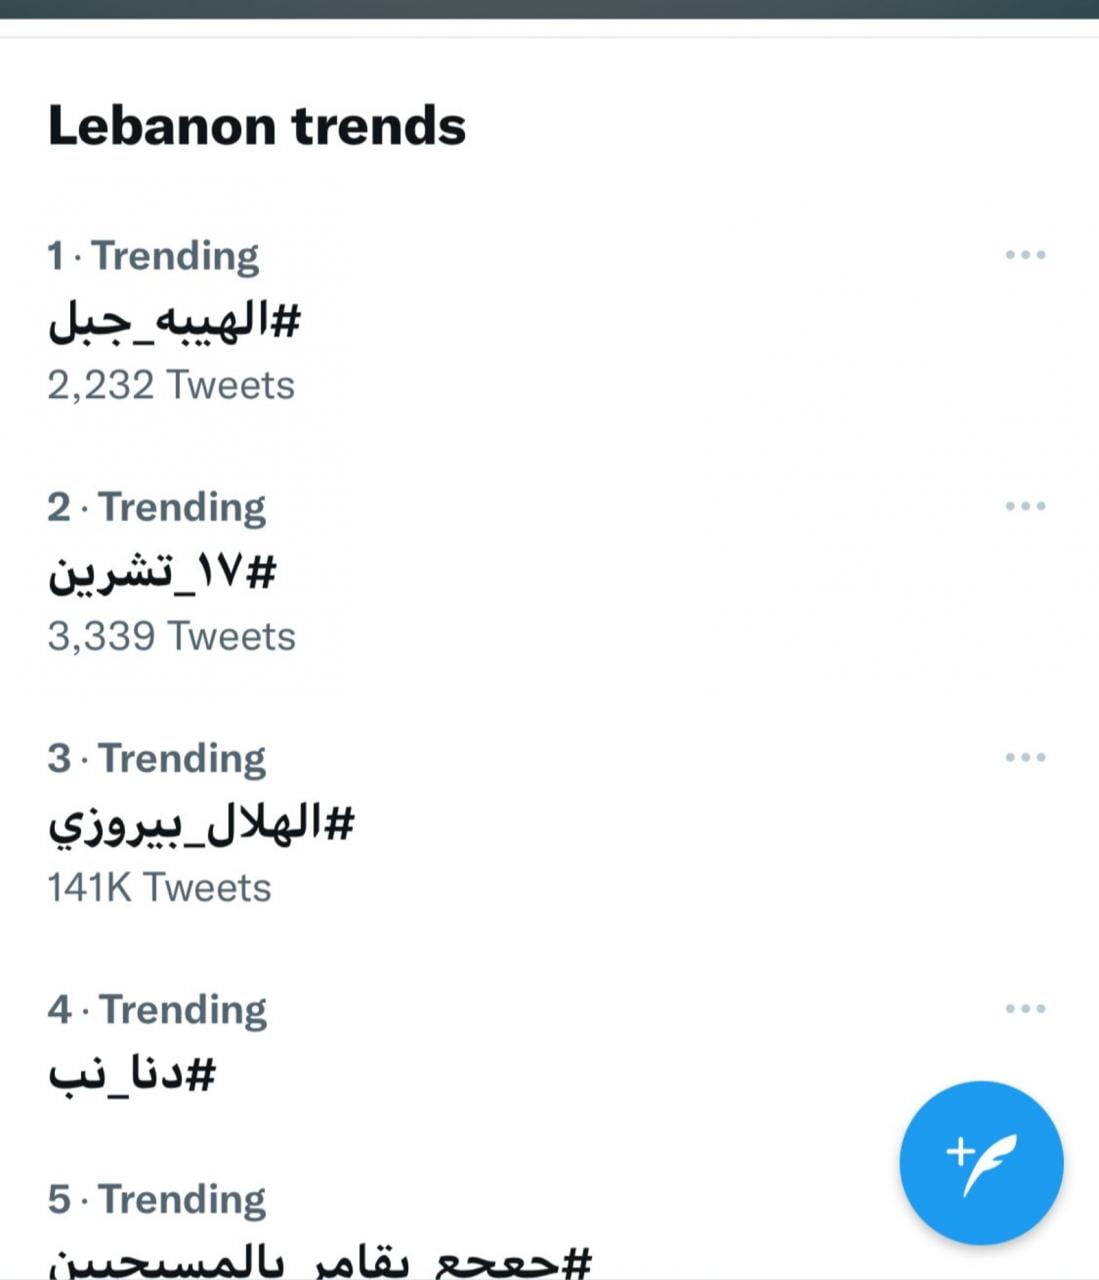 مسلسل الهيبة جبل ترند في لبنان والسعودية